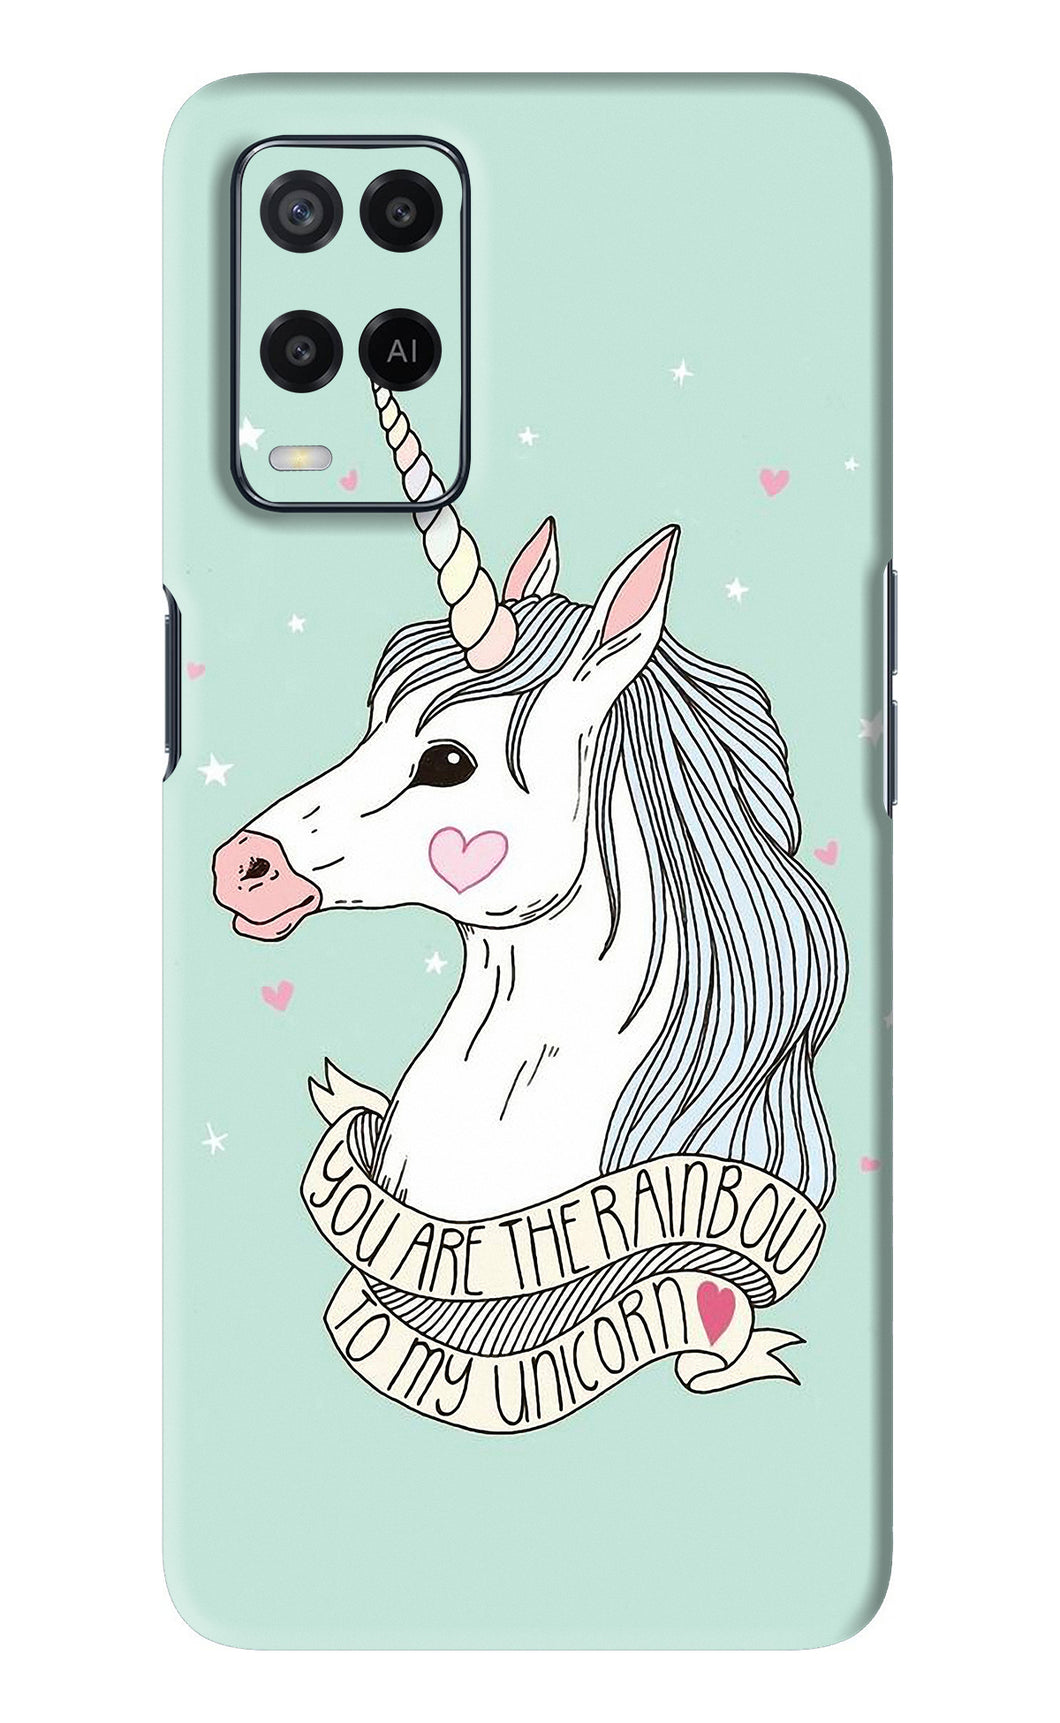 Bạn có yêu thích những hình ảnh liên quan tới loài kỳ lân xinh đẹp không? Oppo A54 unicorn wallpaper sẽ đáp ứng được sở thích của bạn và tạo nên một không gian khác biệt trên điện thoại của mình.